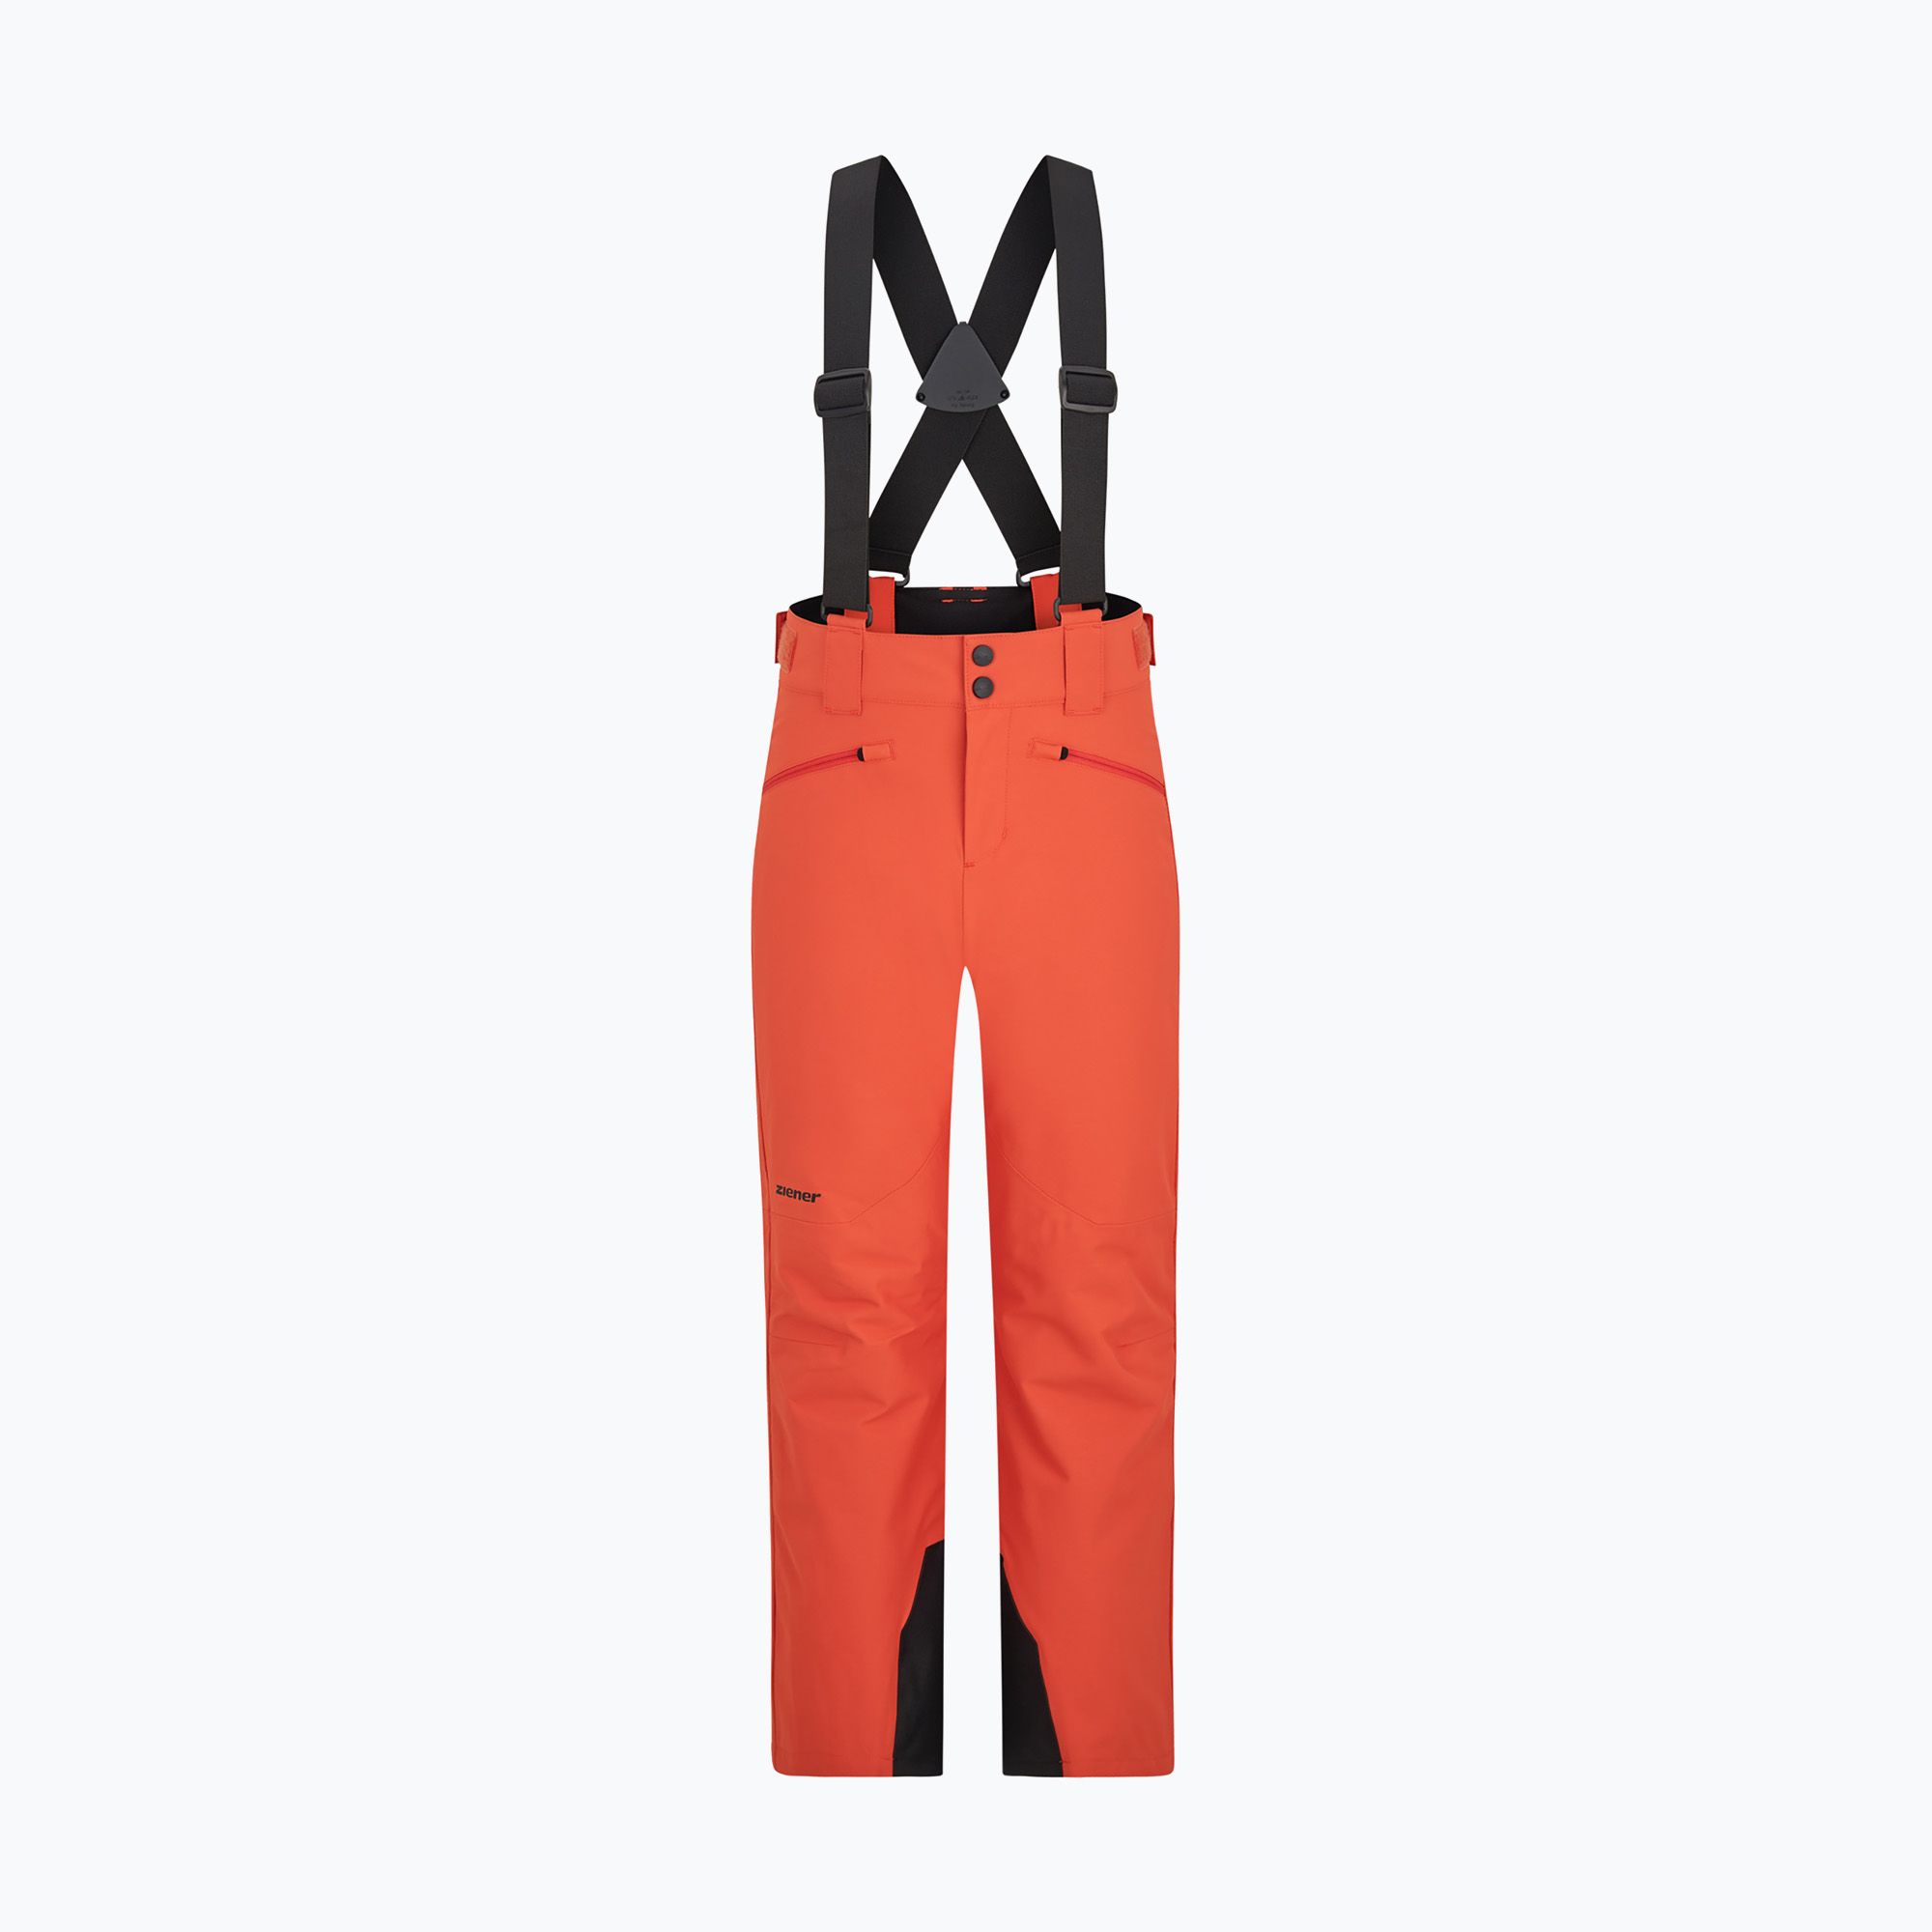 ZIENER Axi children's ski trousers burnt orange